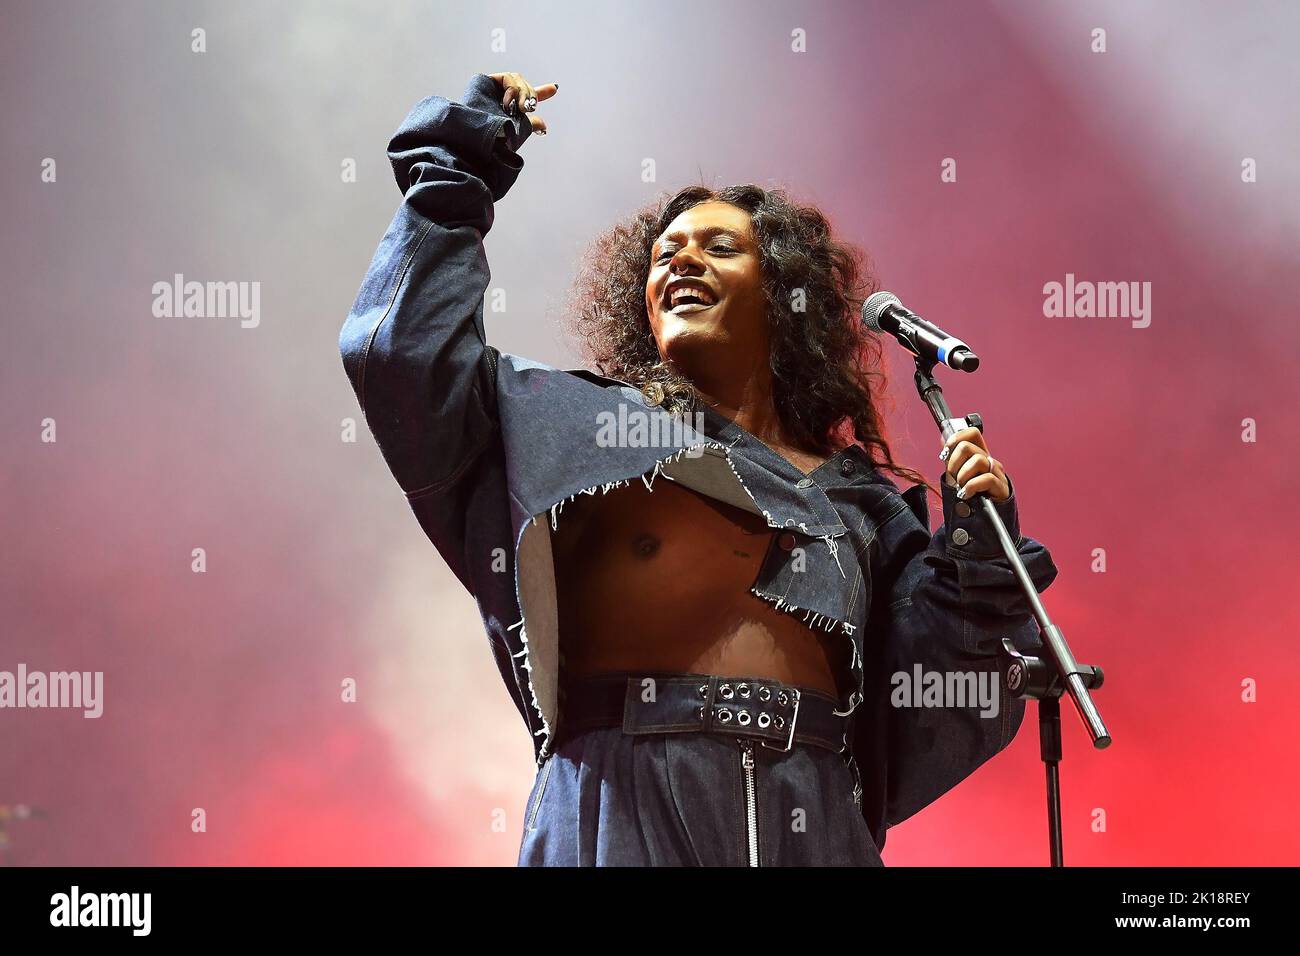 Rio de Janeiro, Brazil,September 11, 2022. Singer and actress Liniker, during her show at Rock in Rio 2022, in the city of Rio de Janeiro. Stock Photo